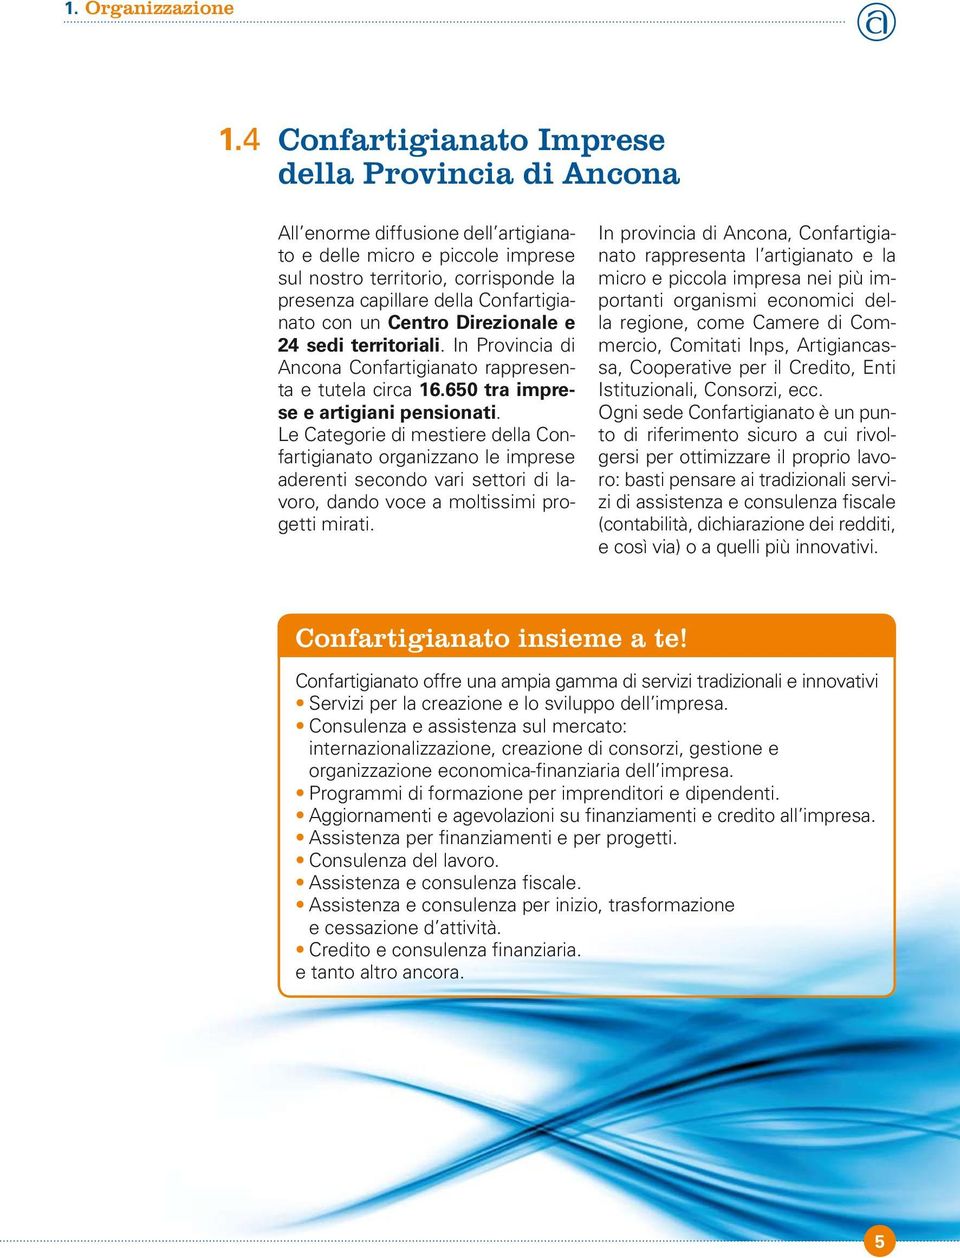 Confartigianato con un Centro Direzionale e 24 sedi territoriali. In Provincia di Ancona Confartigianato rappresenta e tutela circa 16.650 tra imprese e artigiani pensionati.